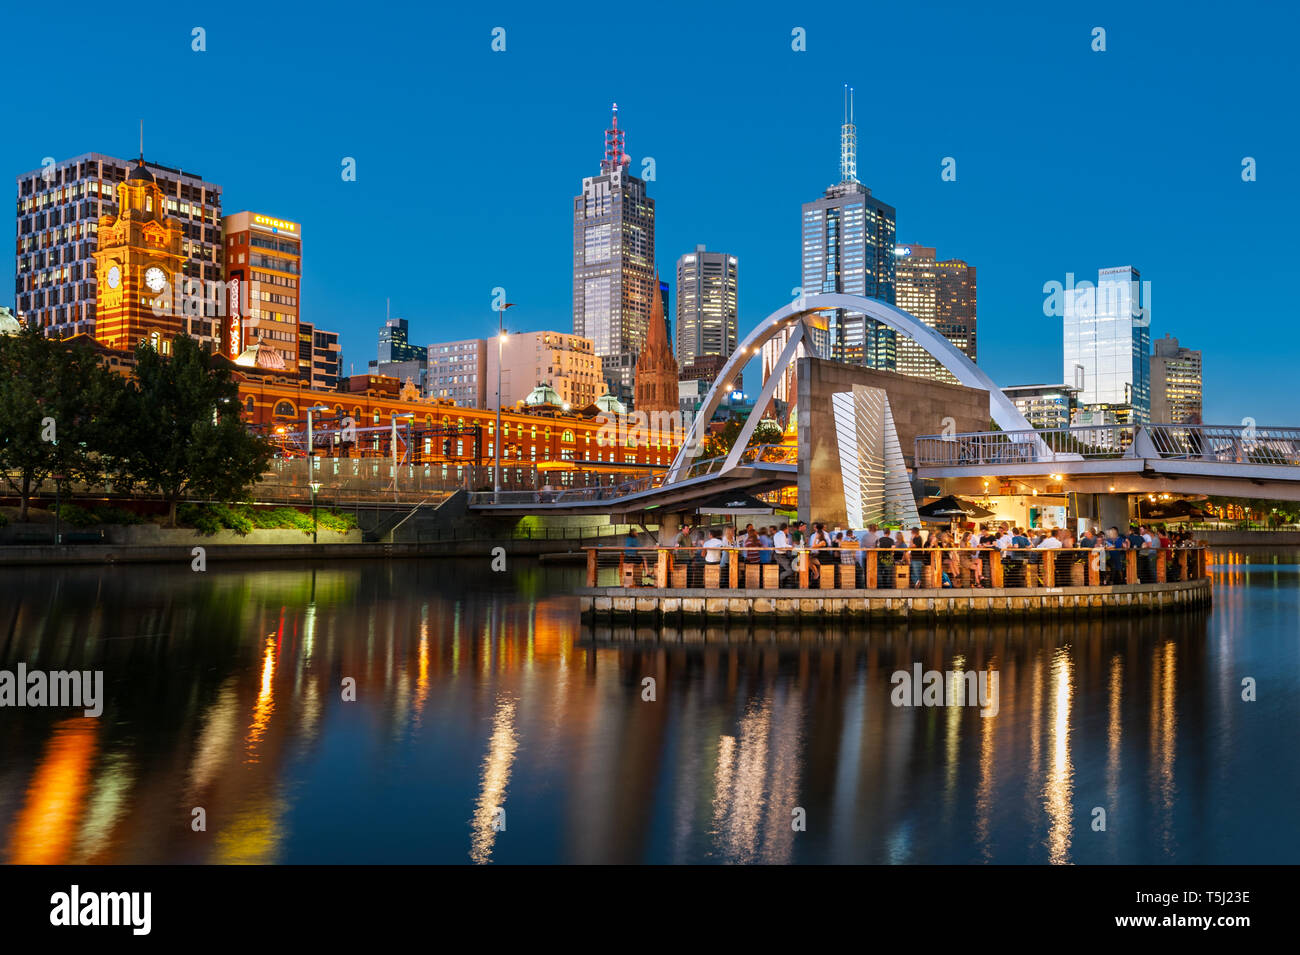 Abend Leben auf der Melbourne Yarra River. Stockfoto